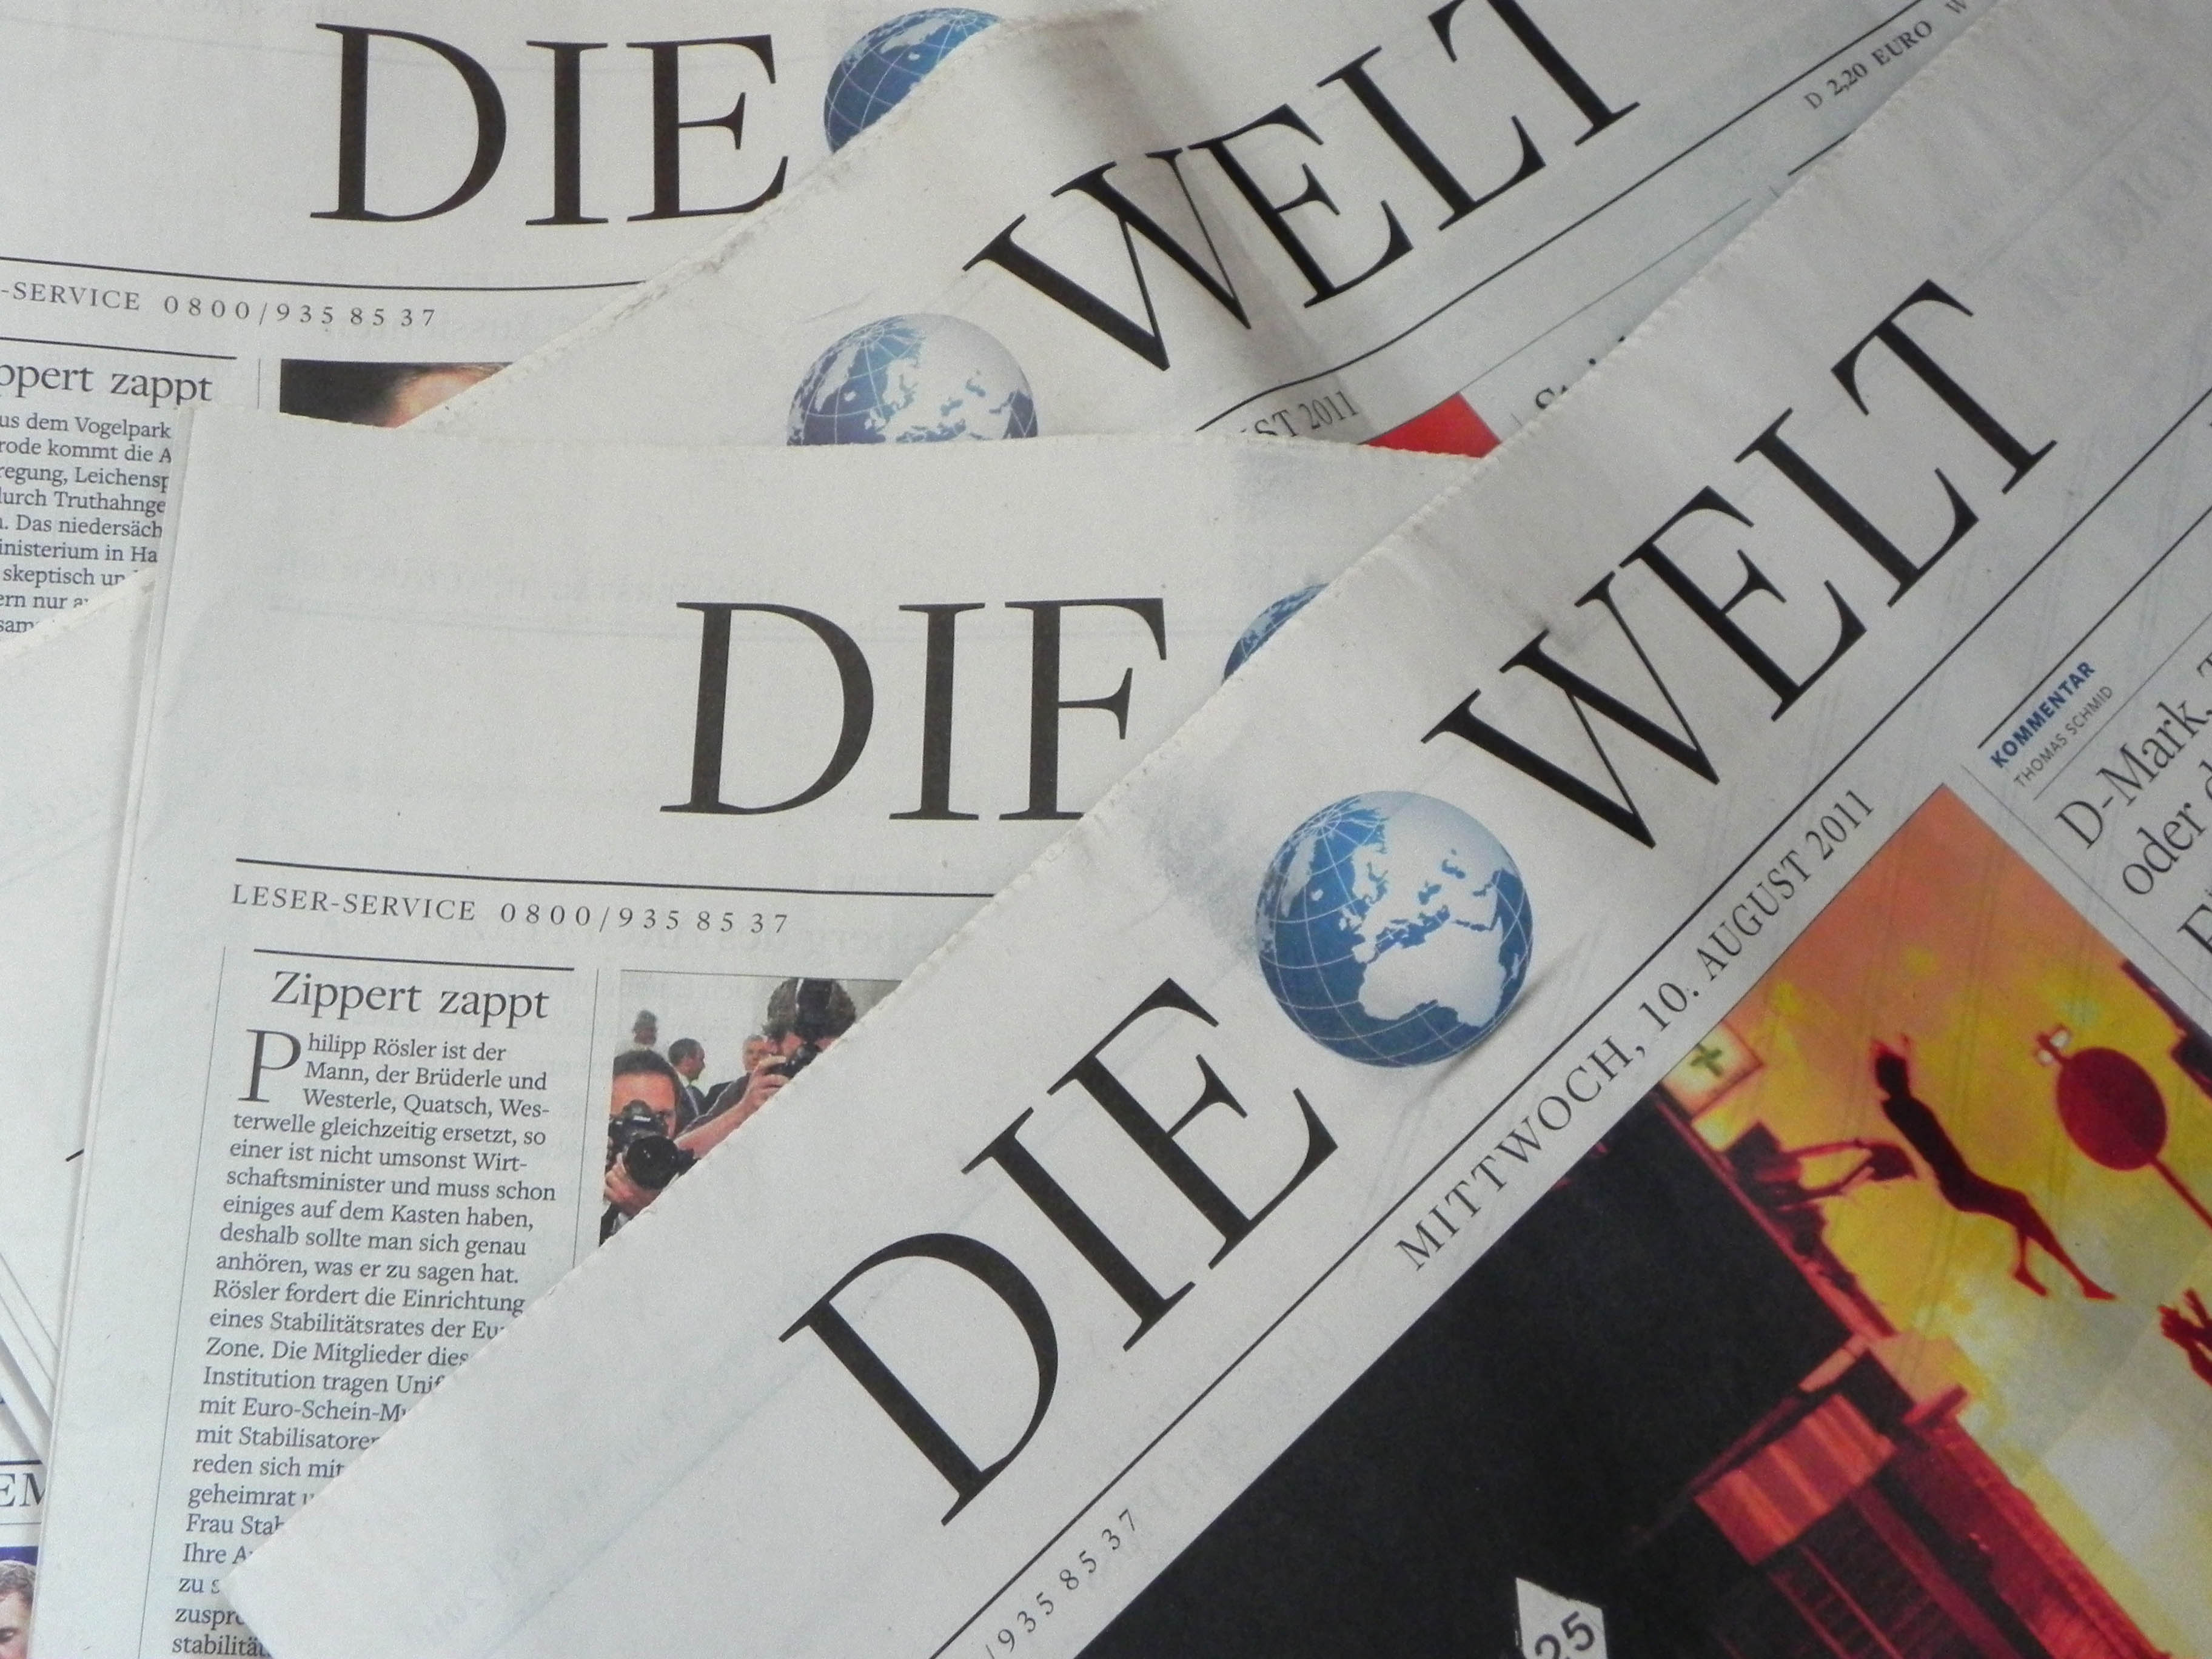 DIE WELT - eine Tageszeitung der Axel Springer AG | Foto: Martin Krauß